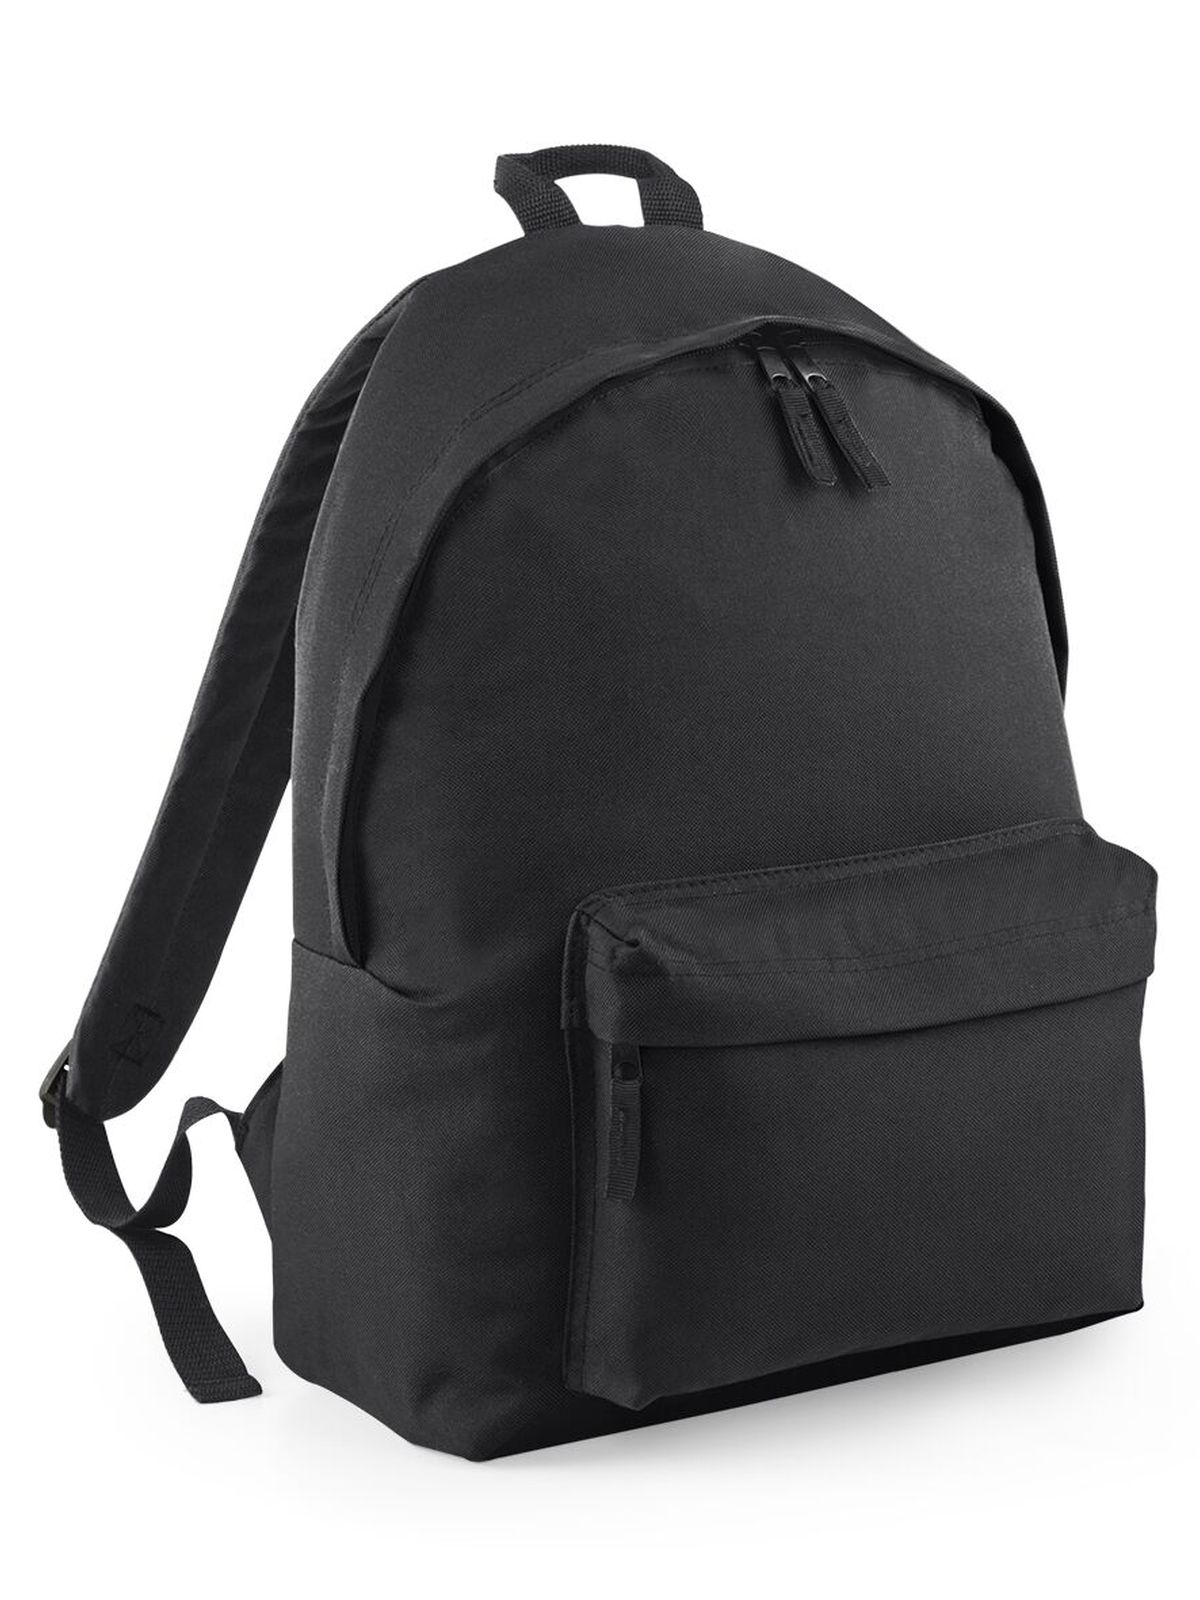 original-fashion-backpack-black-black.webp